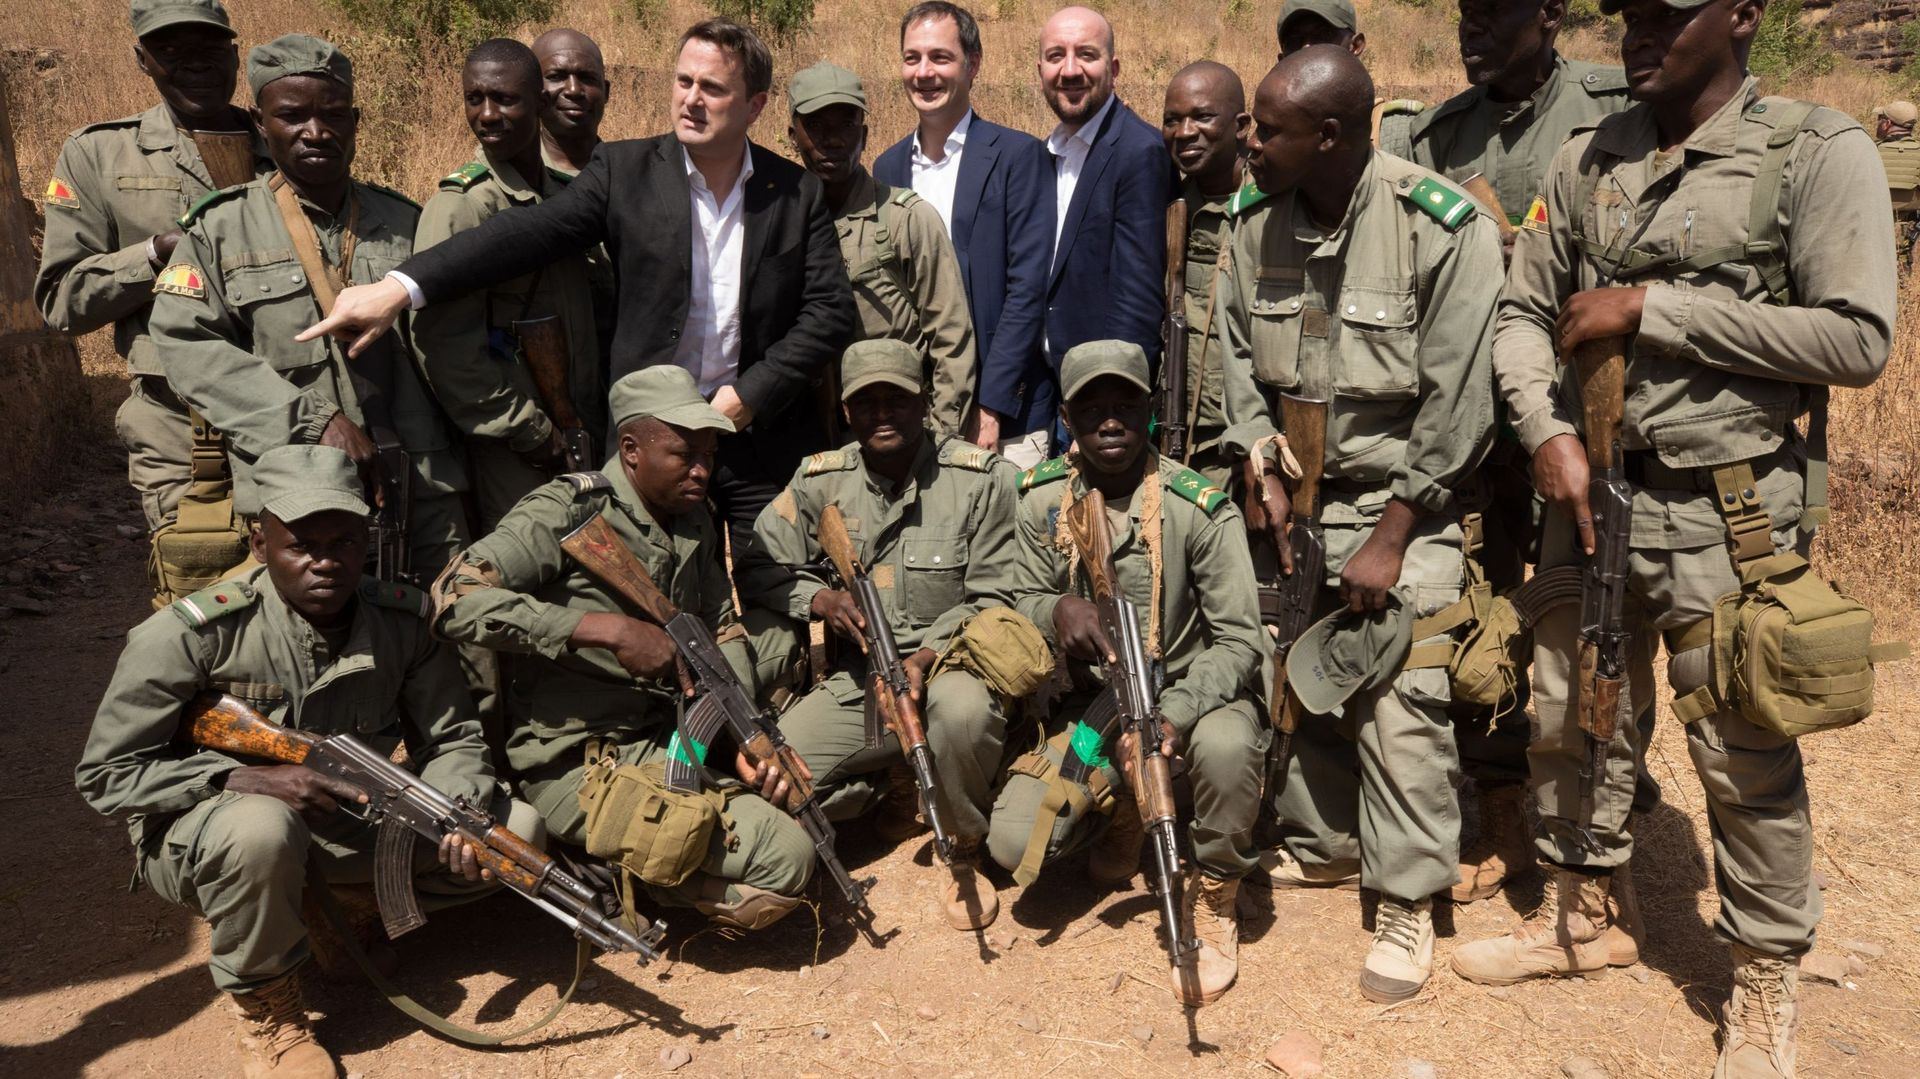 Le Premier ministre luxembourgeois Xavier Bettel (au centre à gauche), le ministre belge de la Coopération au développement Alexander De Croo (Open Vld) et le Premier ministre belge Charles Michel (MR) (au centre à droite) posent avec des soldats maliens 